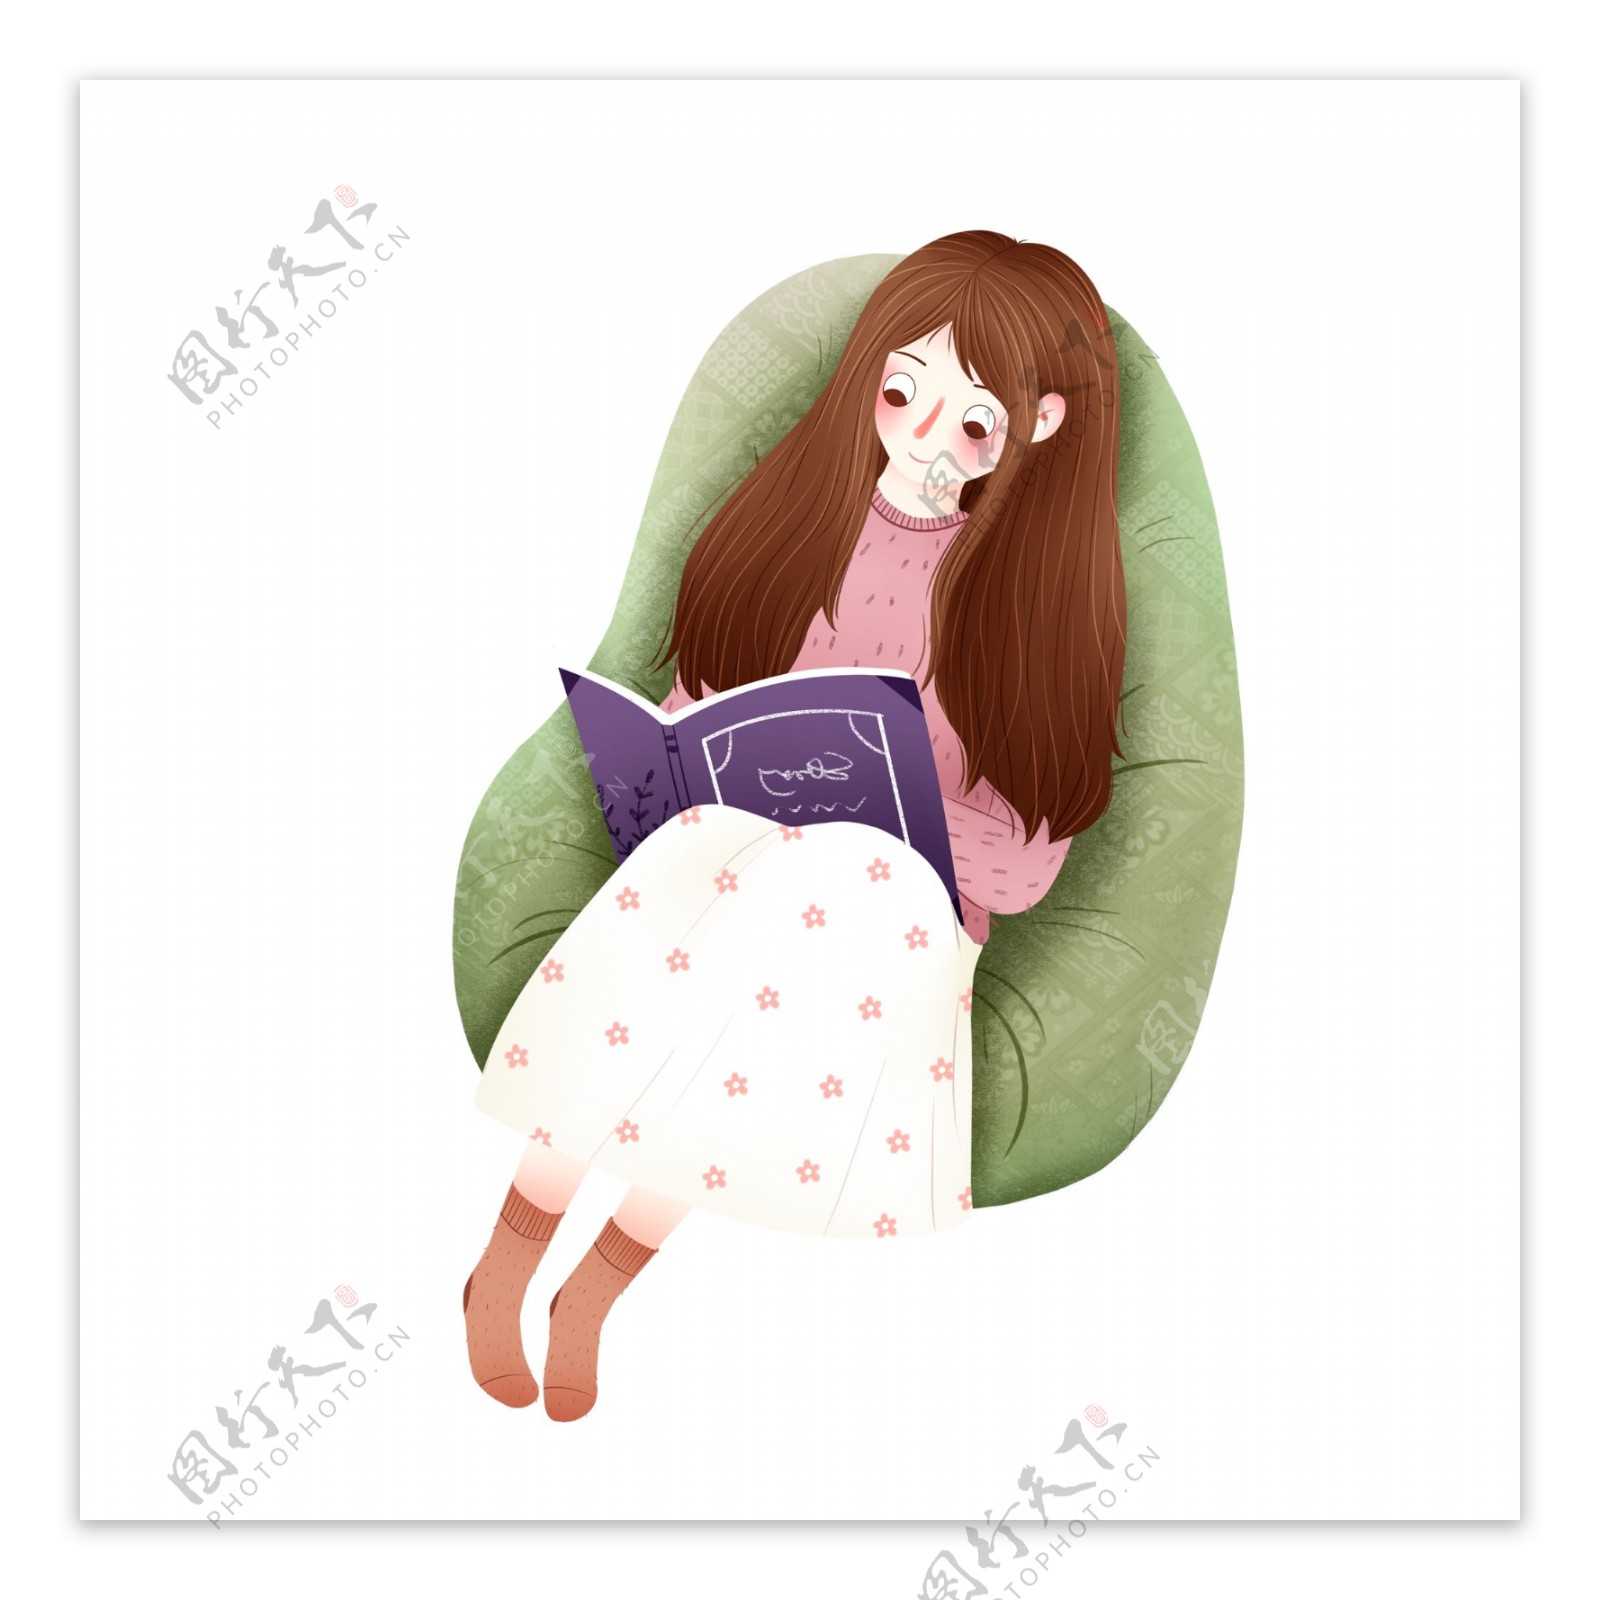 躺着沙发上看书的女孩手绘设计